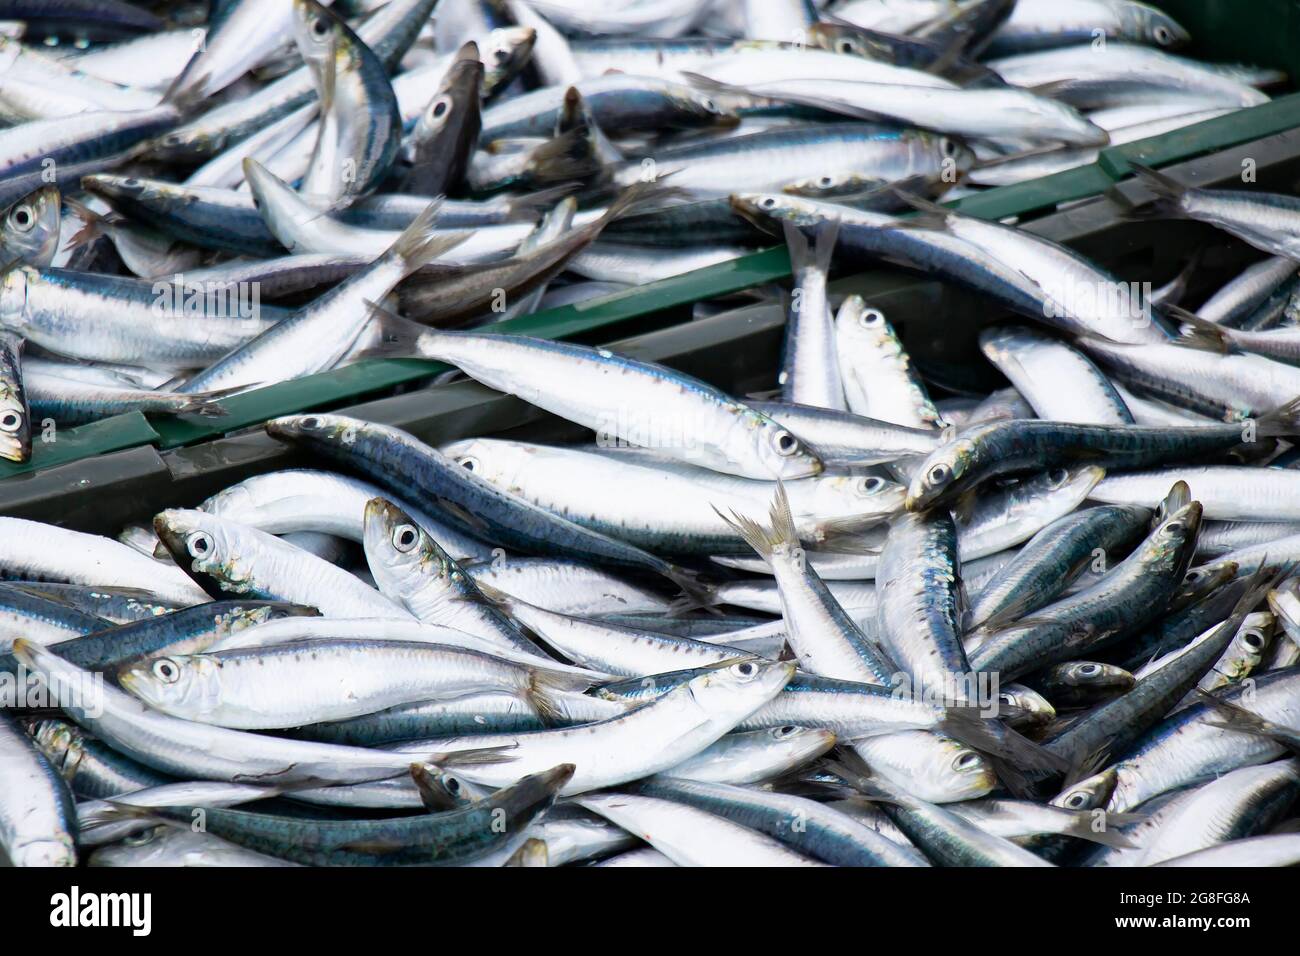 Prises de poissons, sardines, en conteneurs, gros plan Banque D'Images